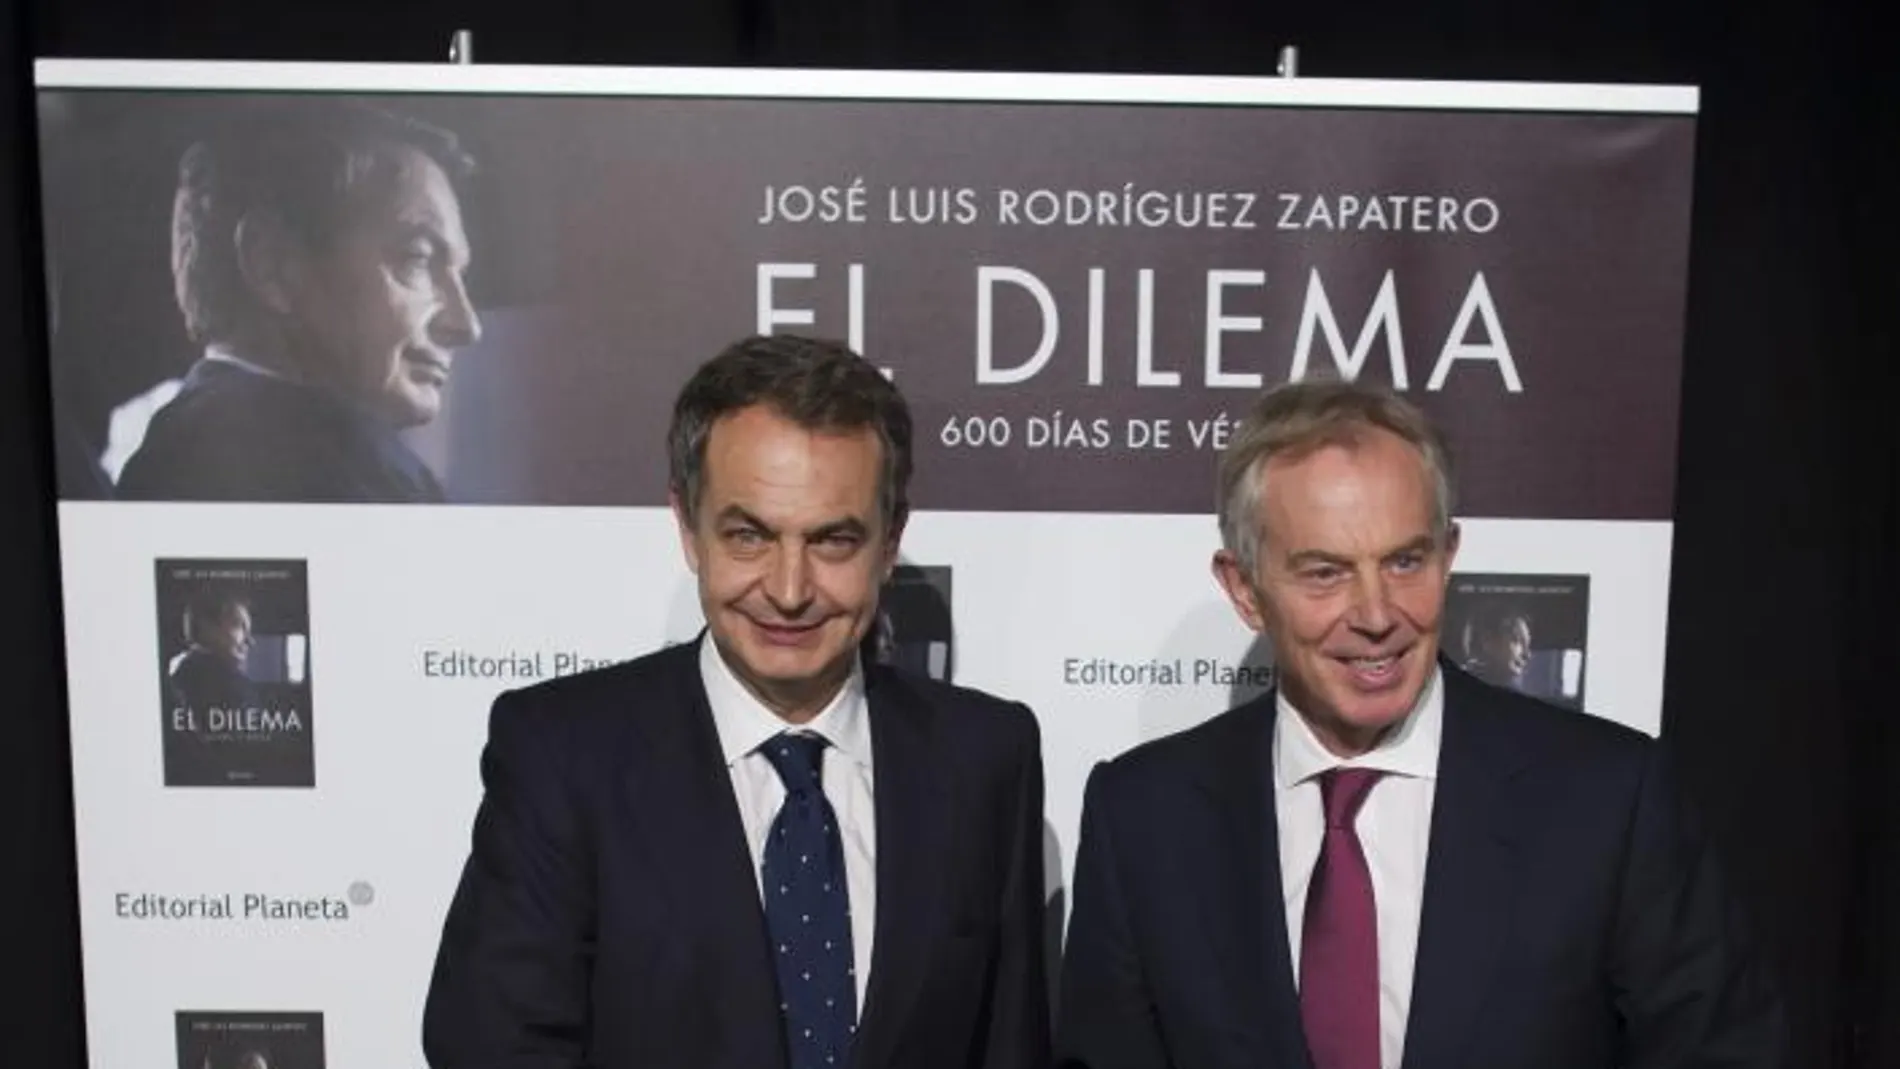 Presentacion del Libro "El Dilema"de Jose Luis Rodriguez Zapatero, con la presencia del ex primer ministro Tony Blair